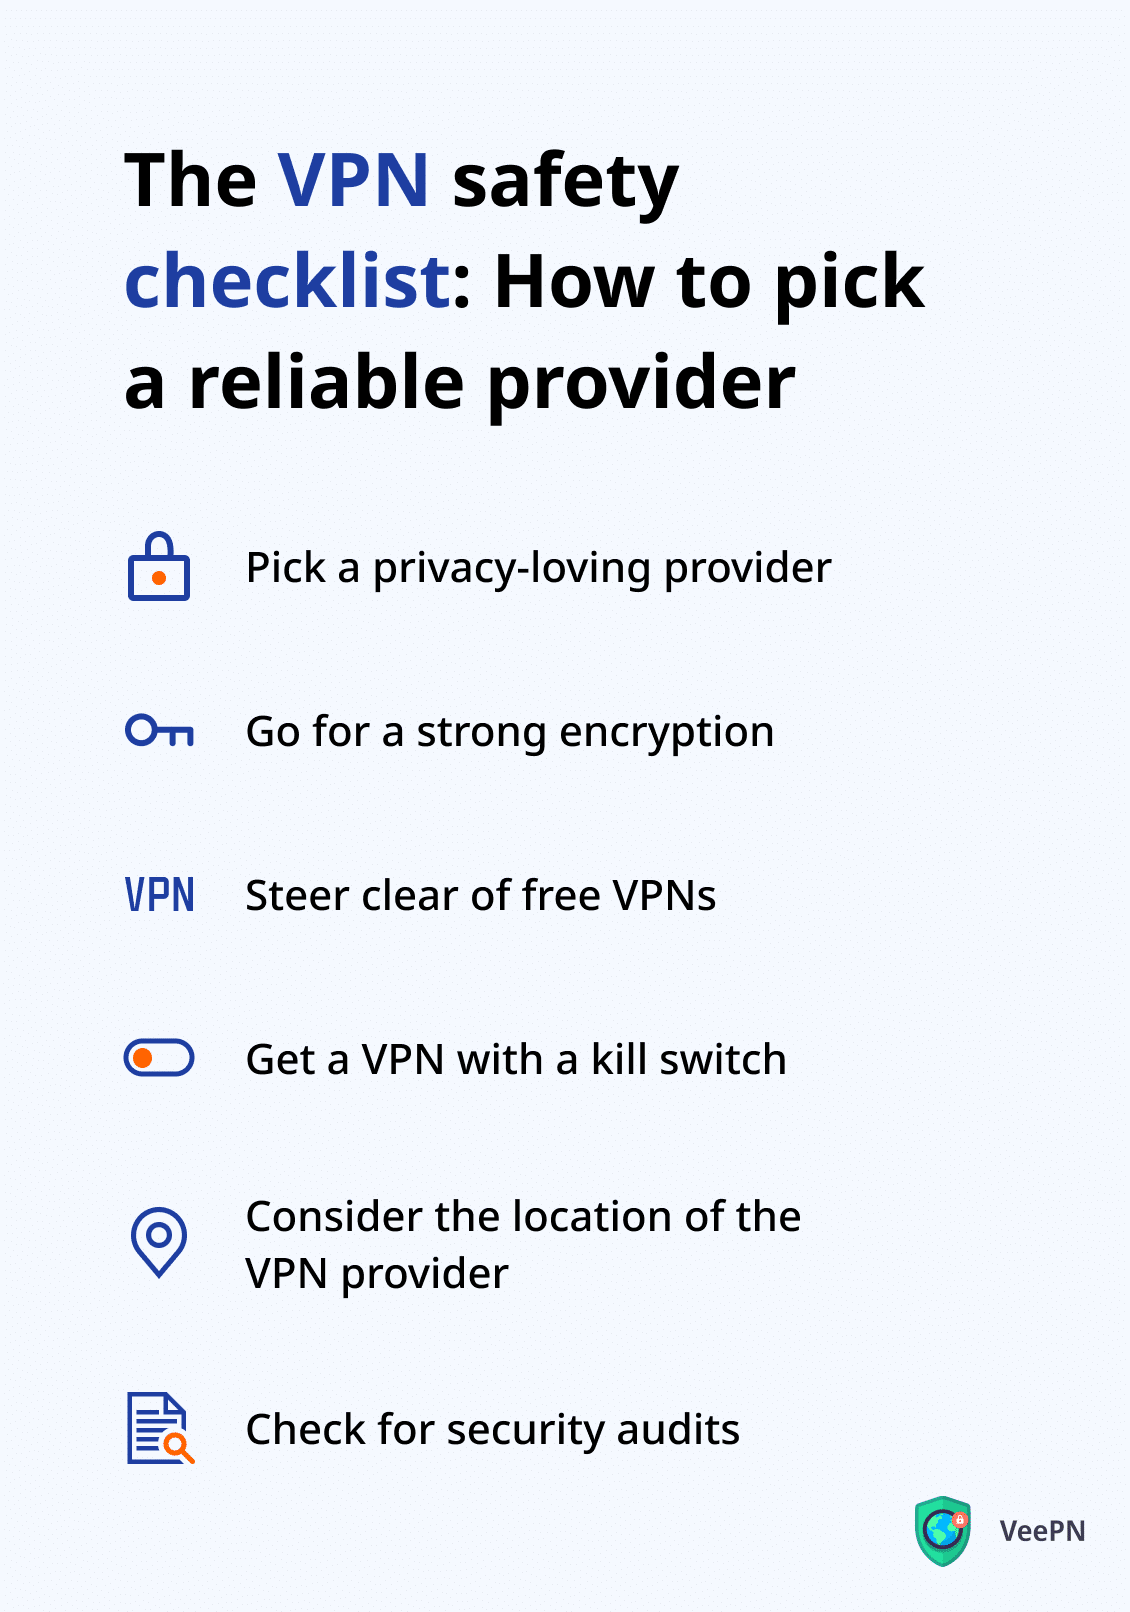 How to choose a safe VPN provider